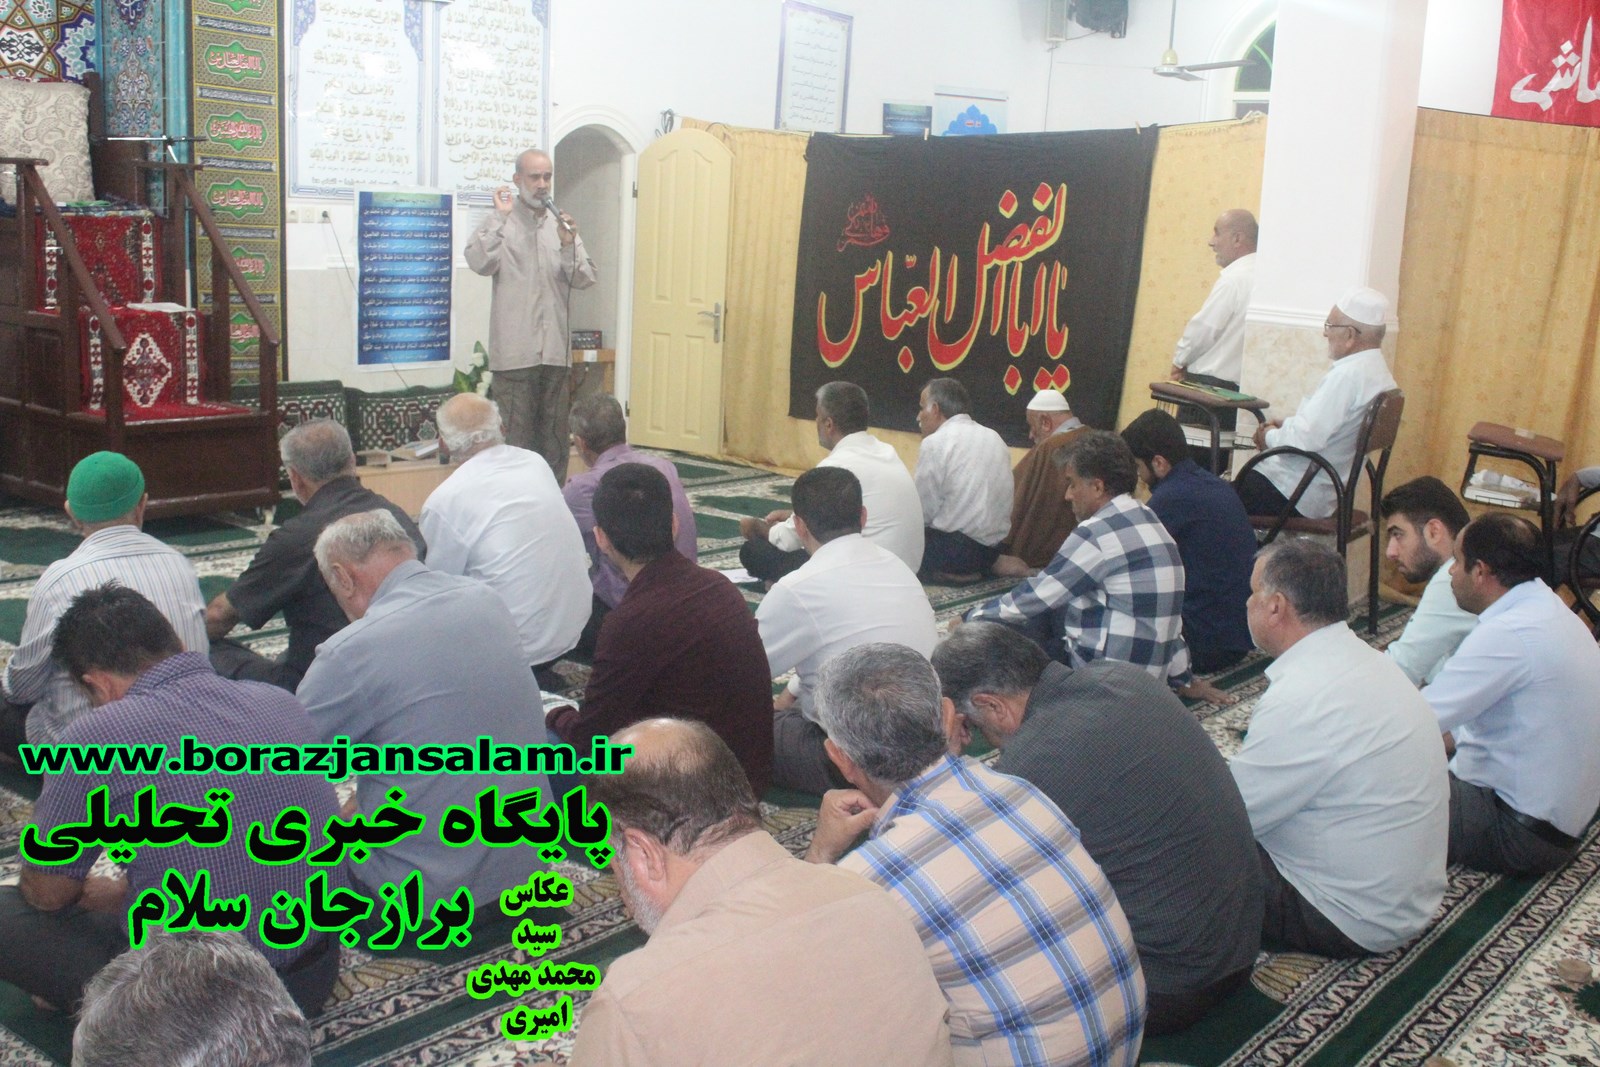 مراسم شب خاطره در مسجد امام خمینی برازجان به مناسبت هفته دفاع مقدس برگزار شد .